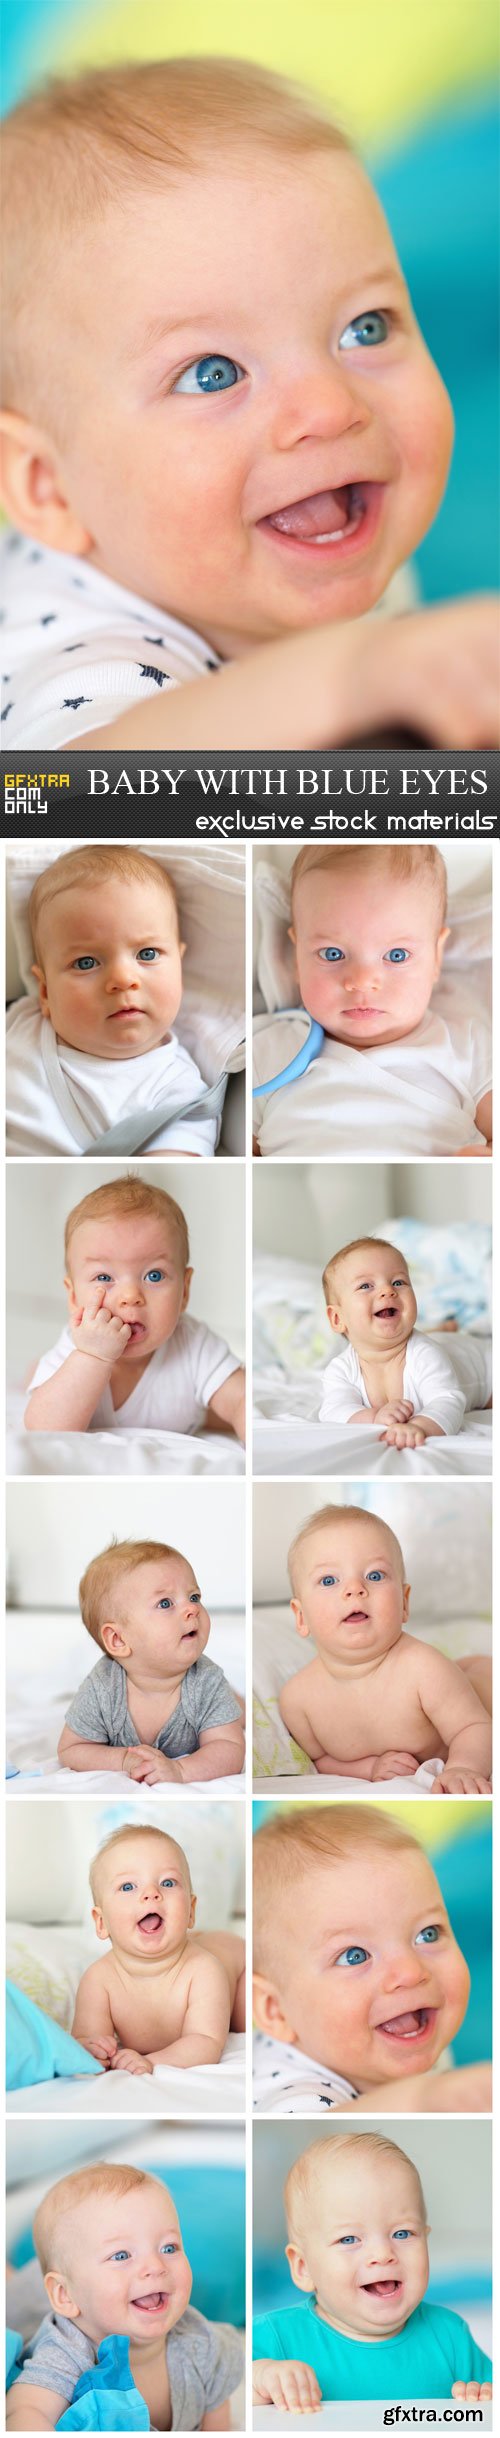 Baby with blue eyes, 10 UHQ JPEG